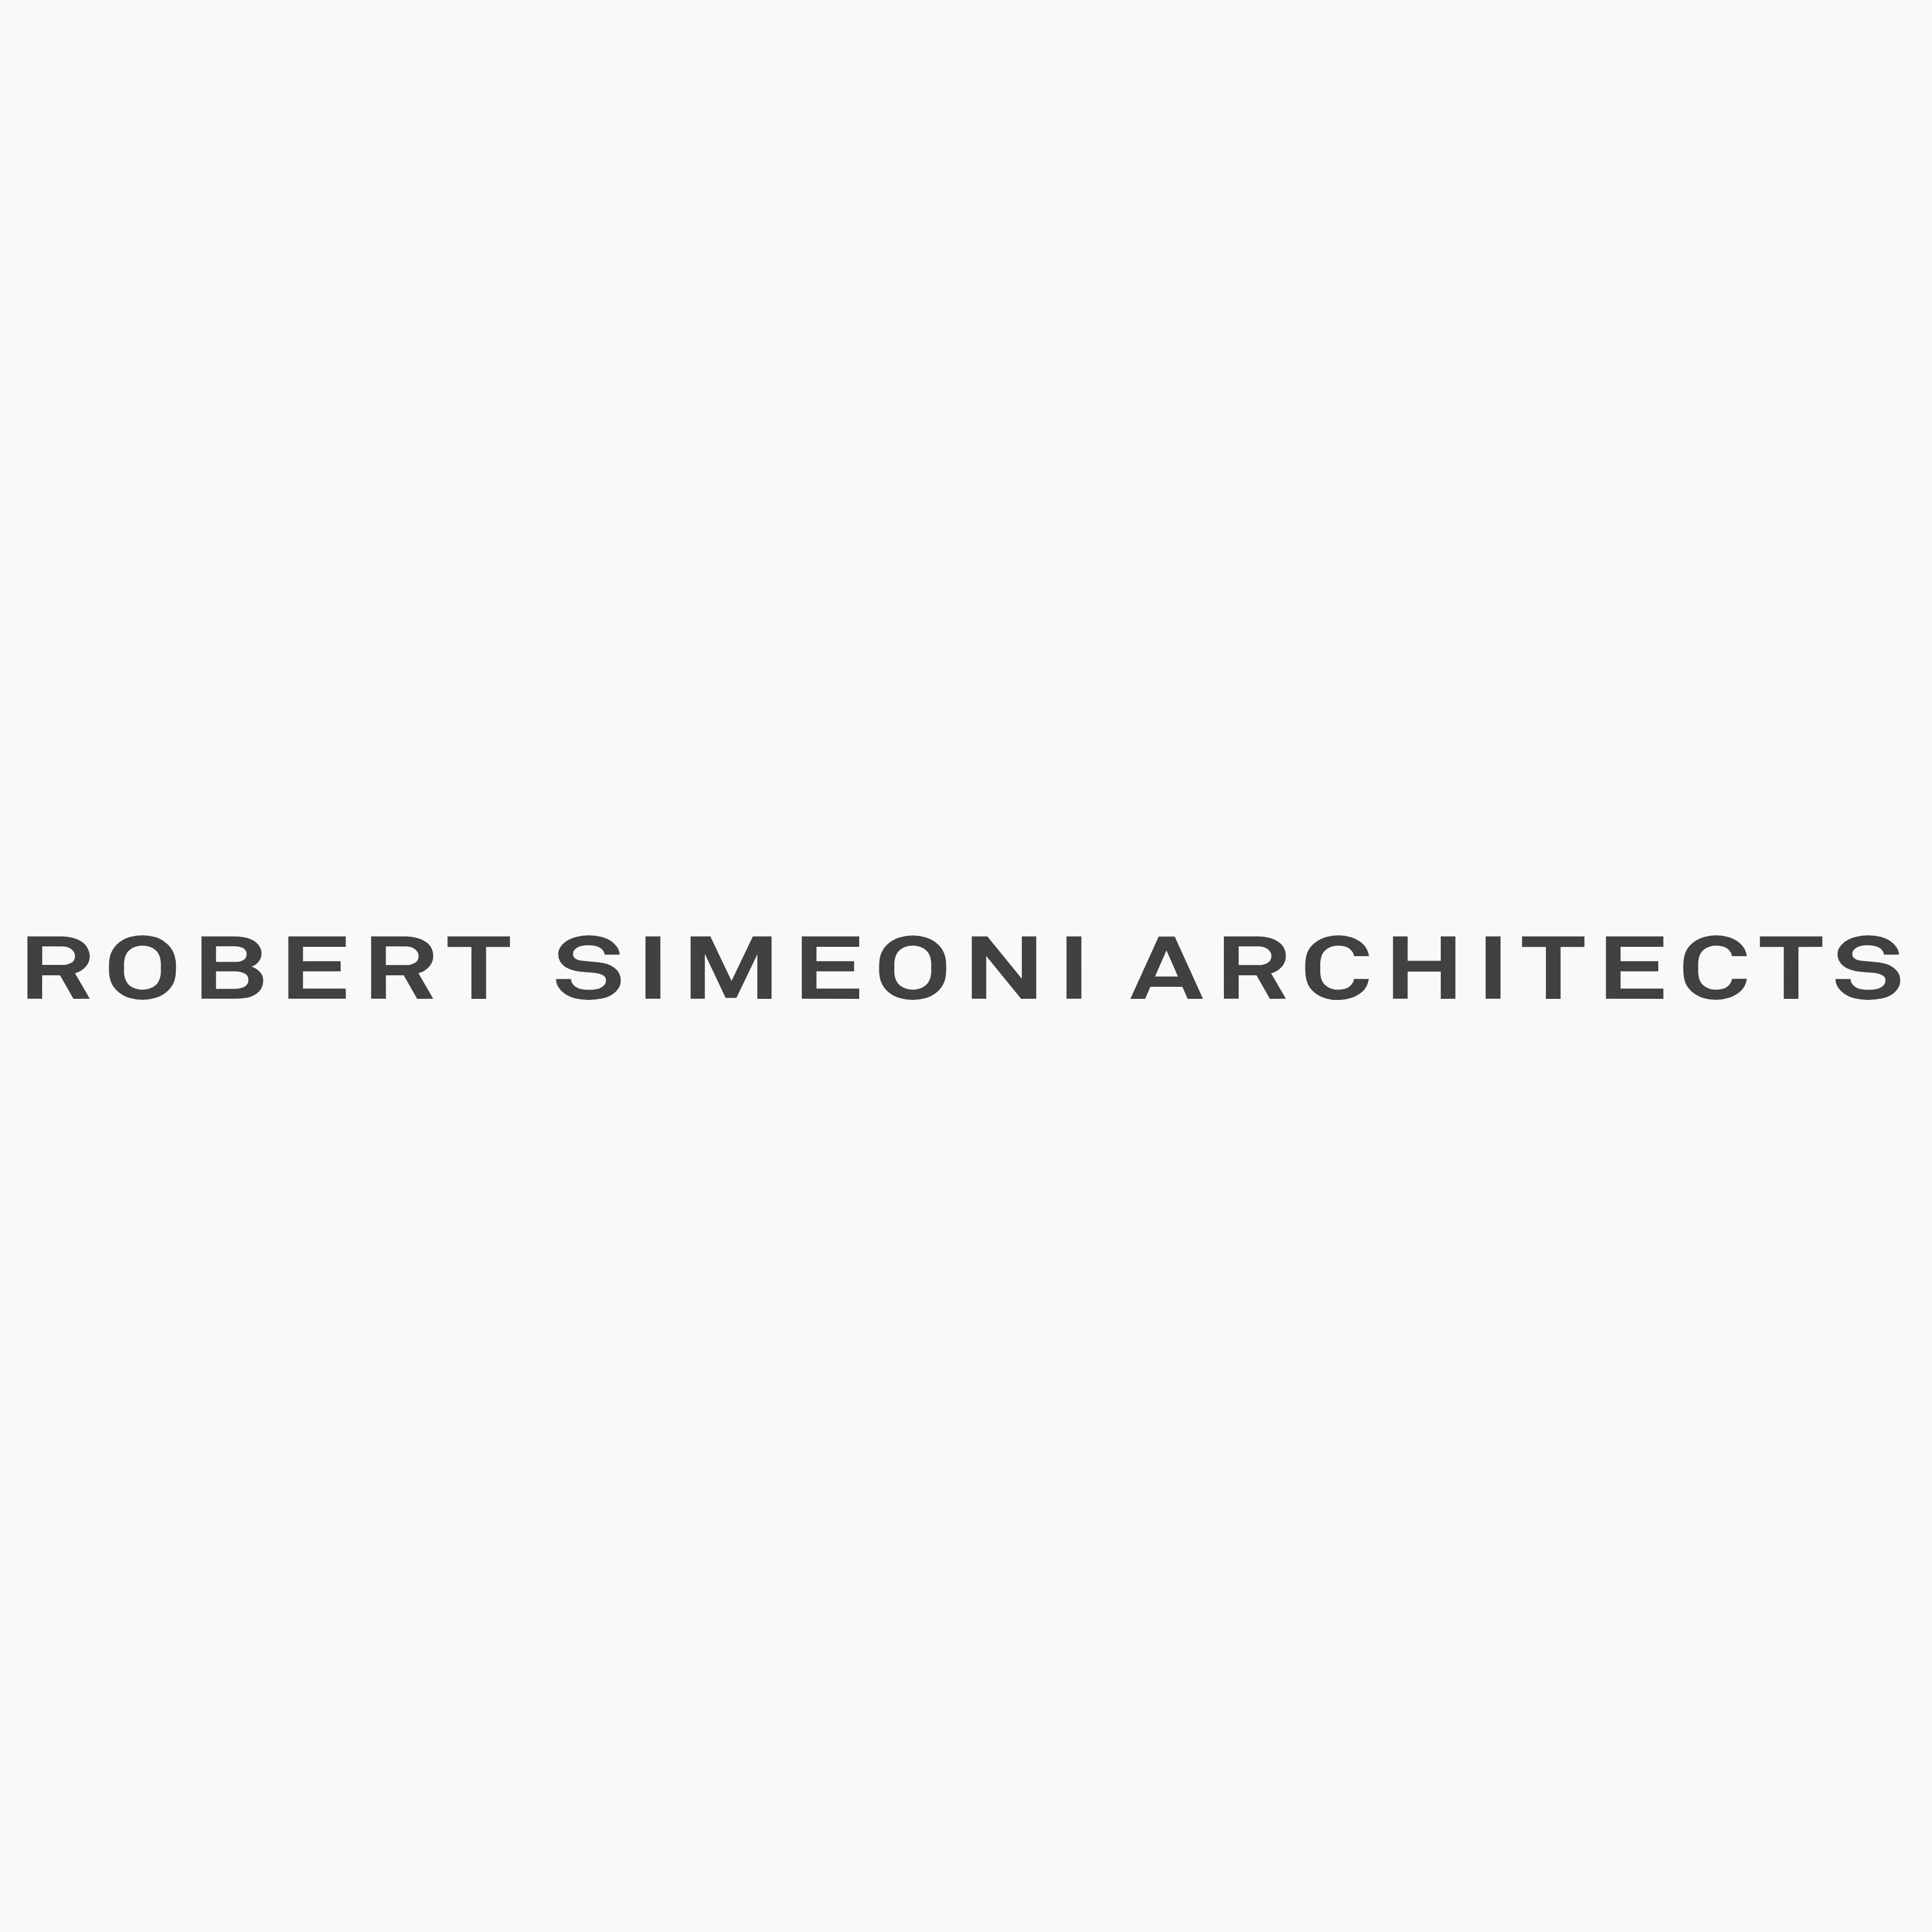 Robert Simeoni Architects